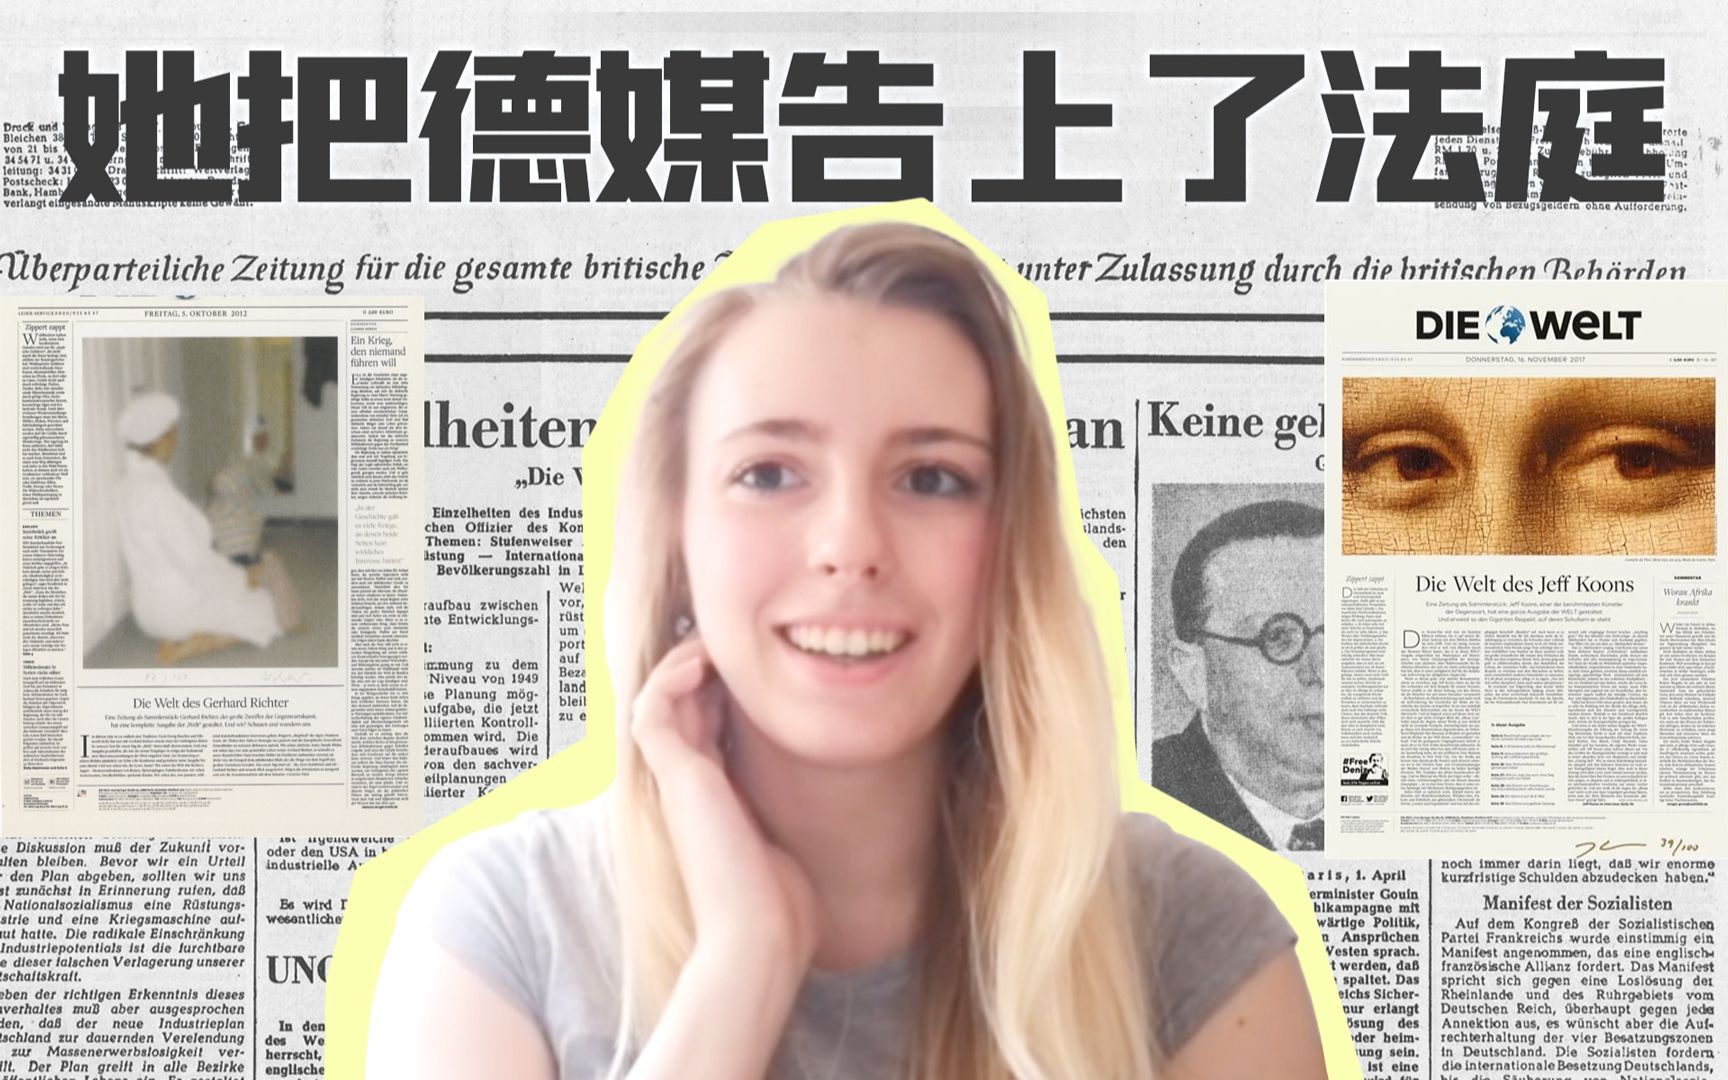 【专访】为中国发声后遭诽谤网暴，德国女孩起诉西媒巨头